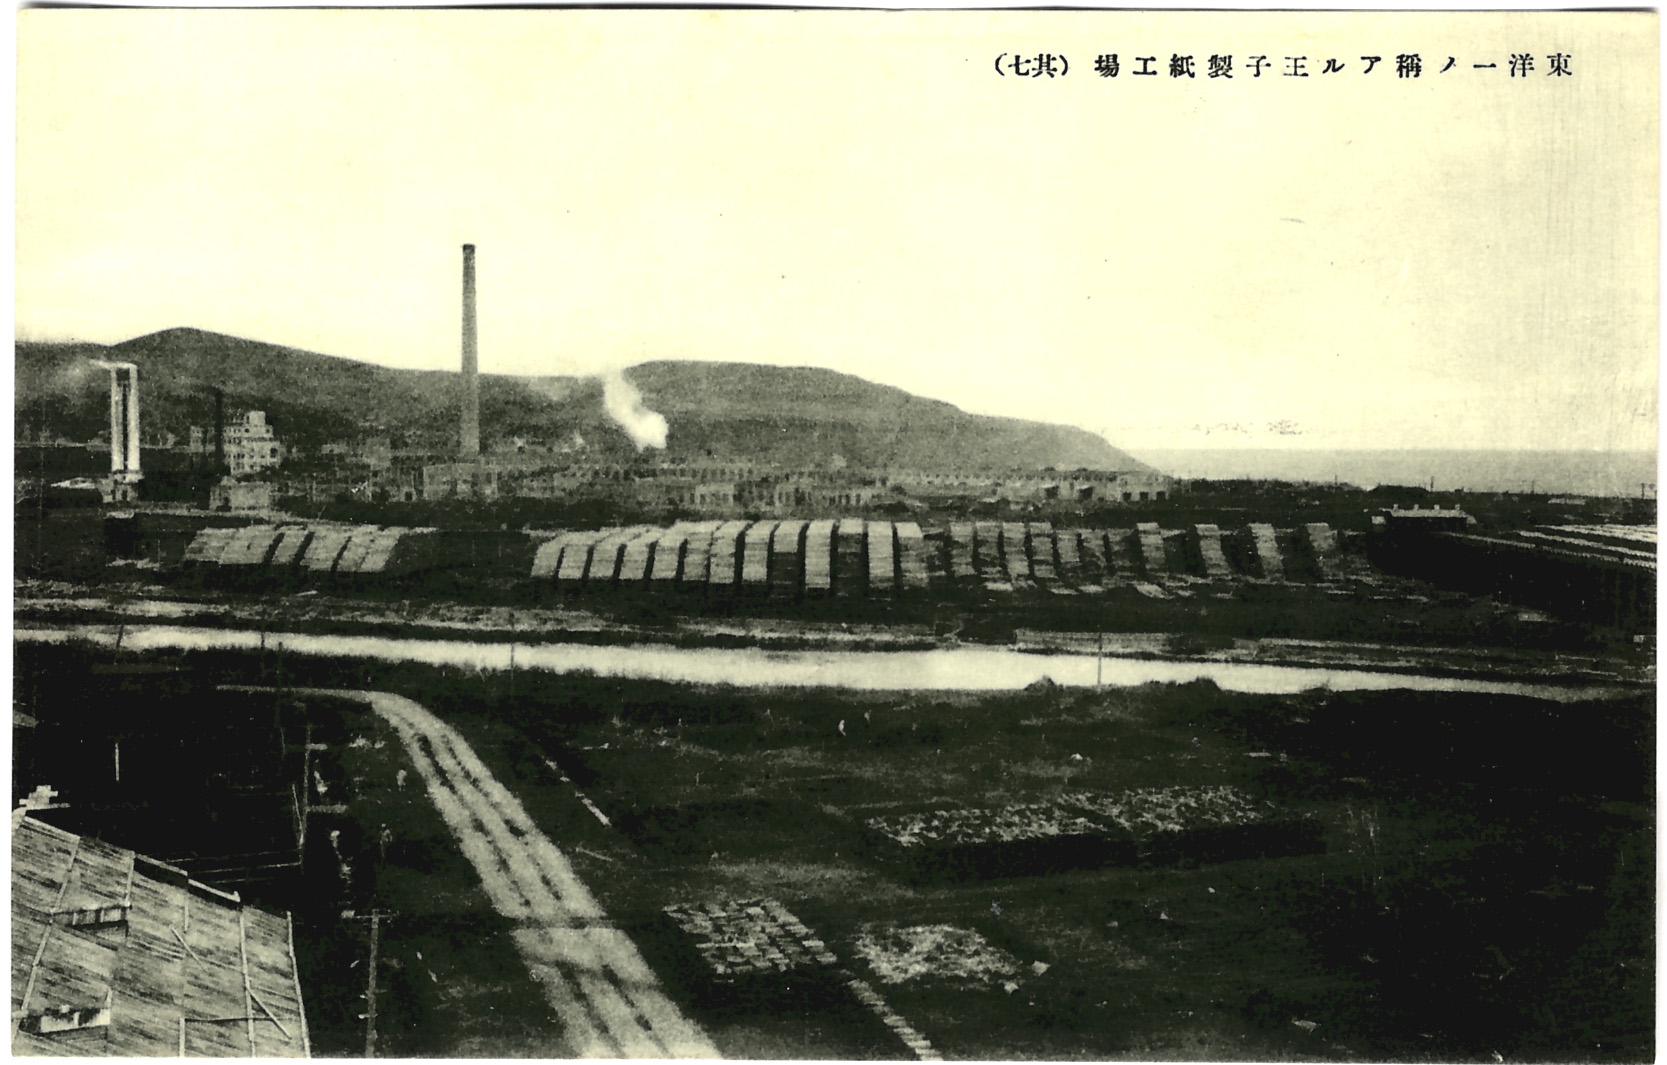 Вид на целлюлозно-бумажную фабрику Одзи в г. Сиритору